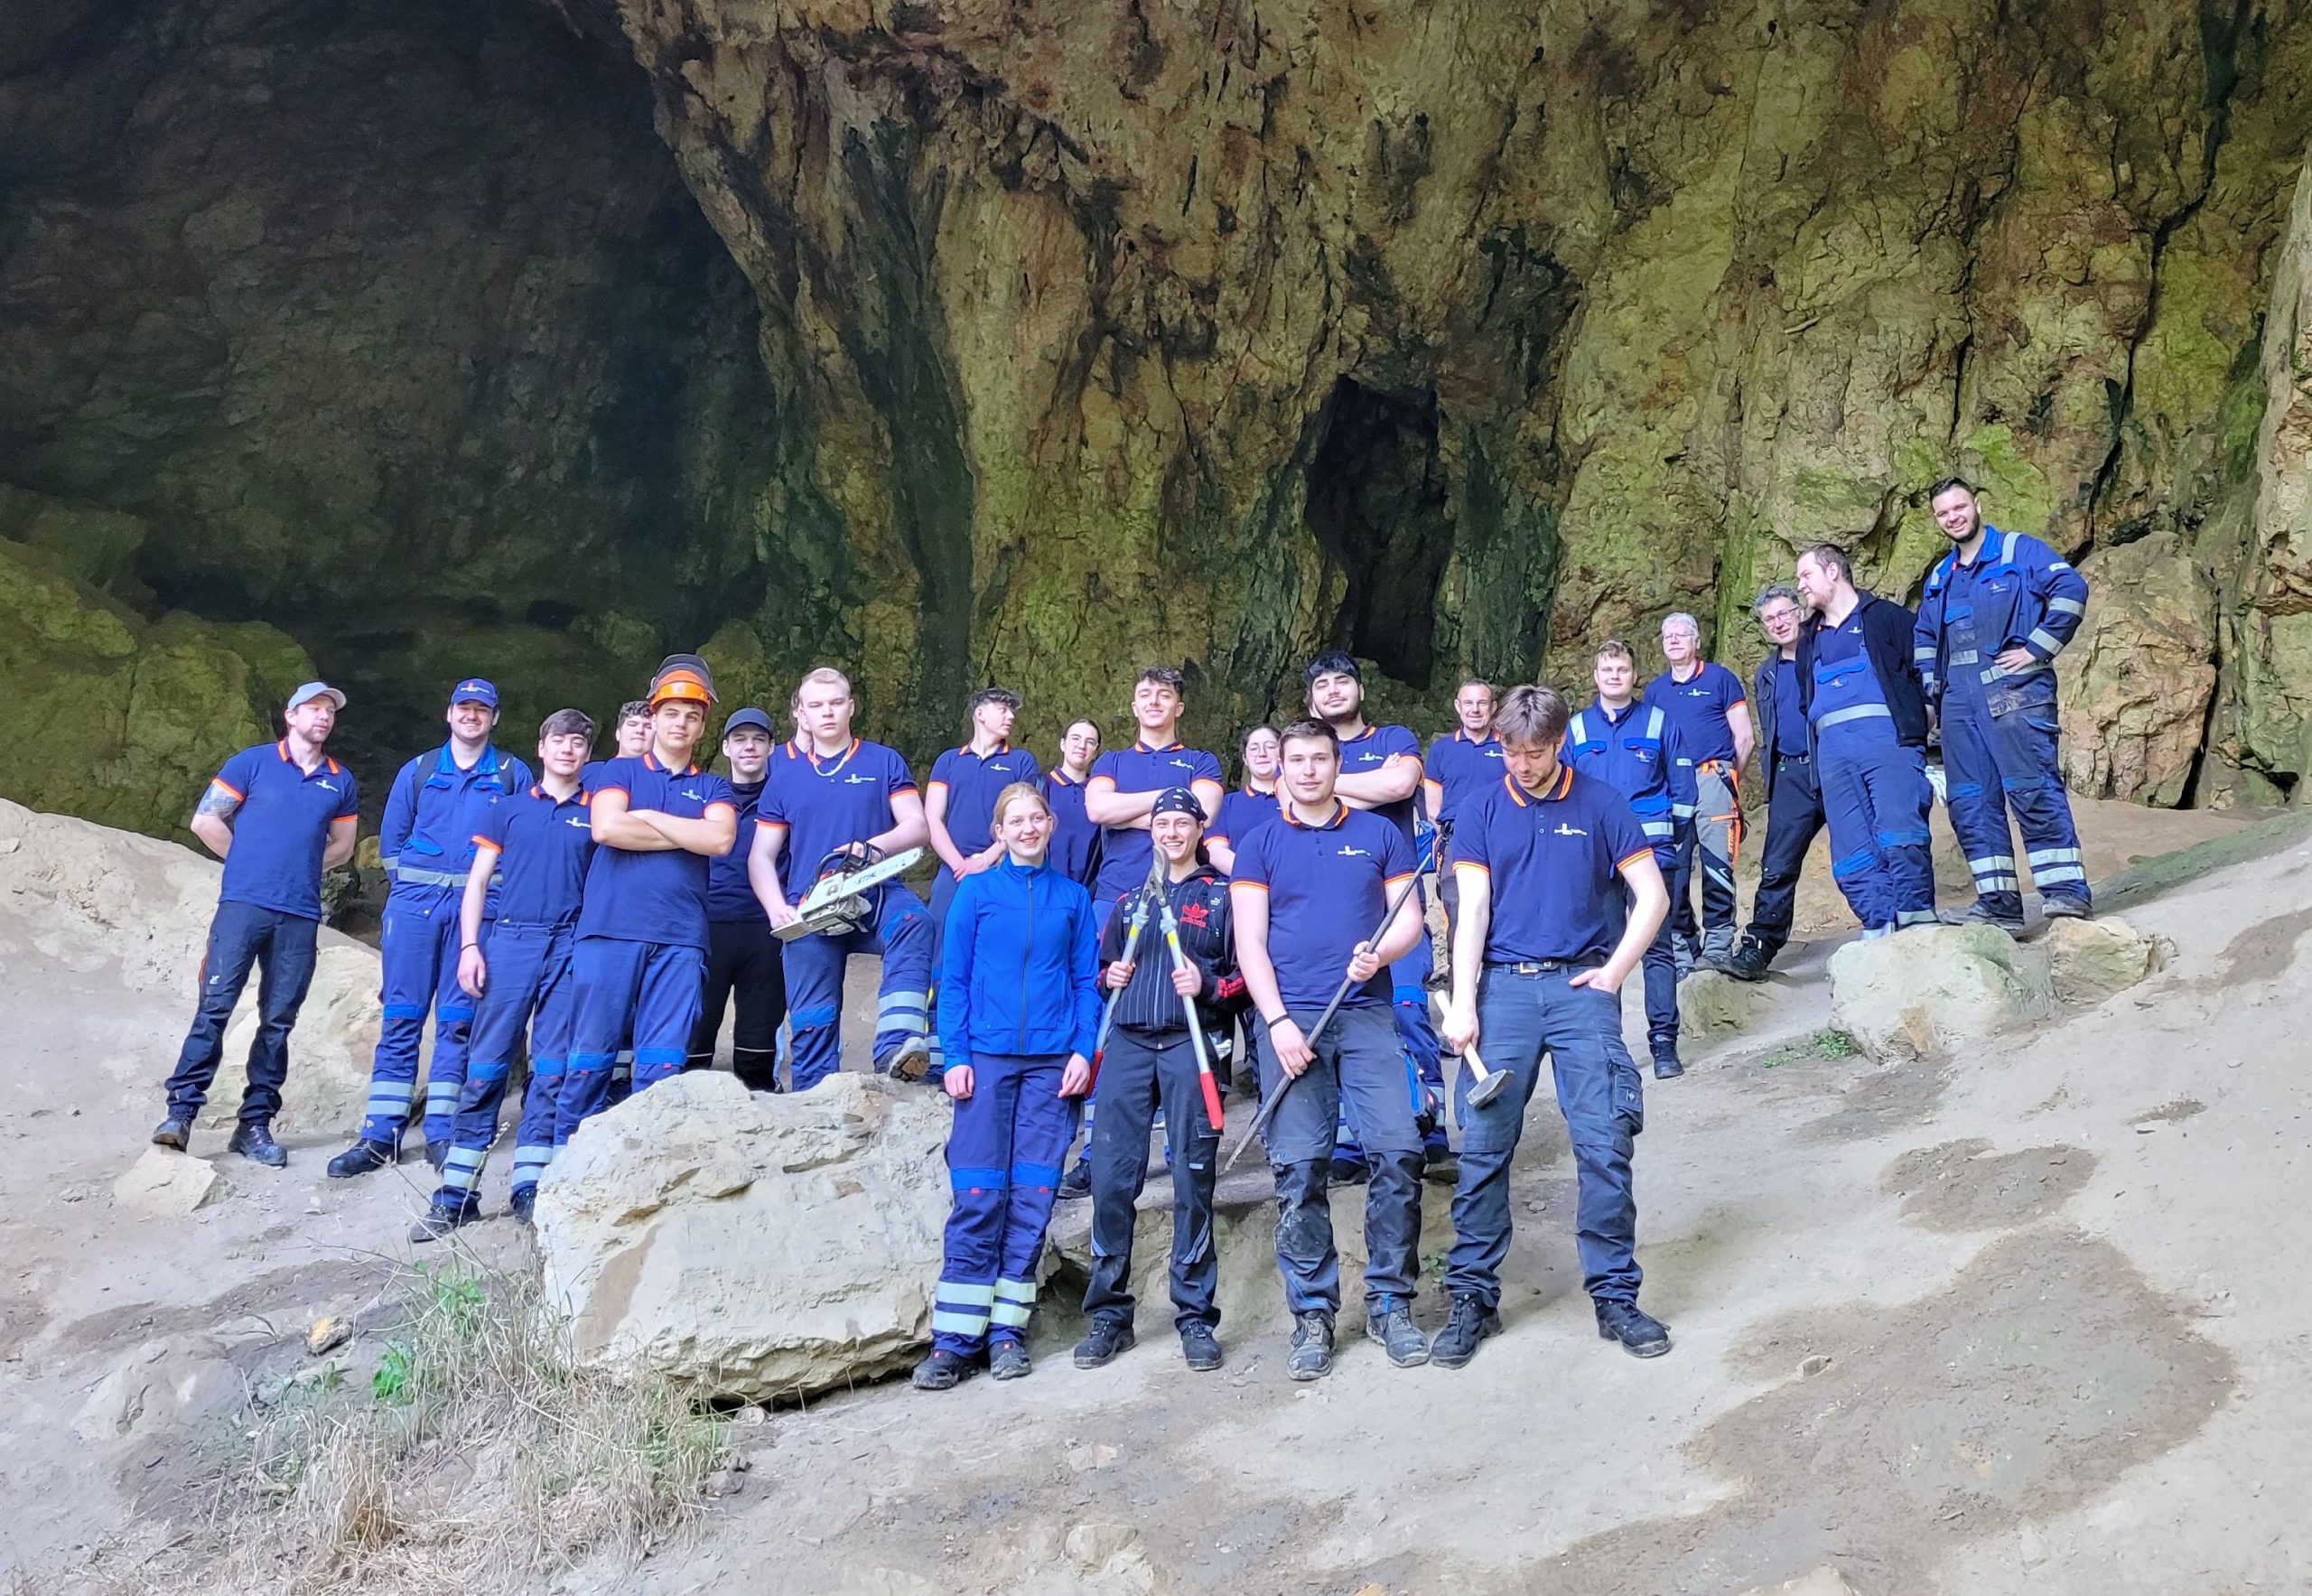 Bild von Azubis der Firma Hammerwerk vor einer Höhle, alle komplett blau gekleidet